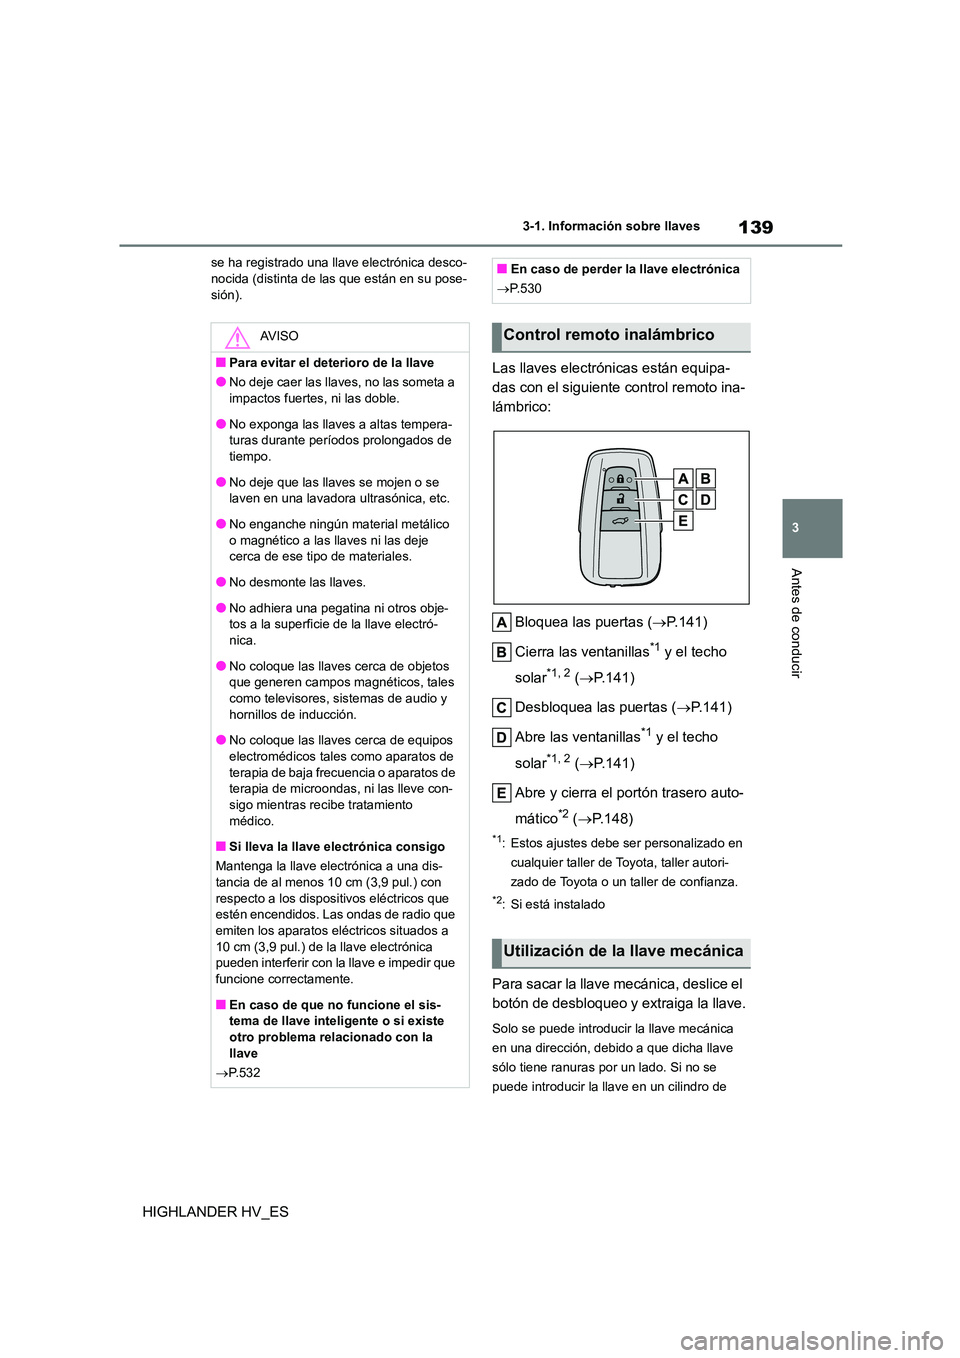 TOYOTA HIGHLANDER 2020  Manual del propietario (in Spanish) 139
3 
3-1. Información sobre llaves
Antes de conducir
HIGHLANDER HV_ES
se ha registrado una llave electrónica desco- nocida (distinta de las que están en su pose- 
sión).
Las llaves electrónicas